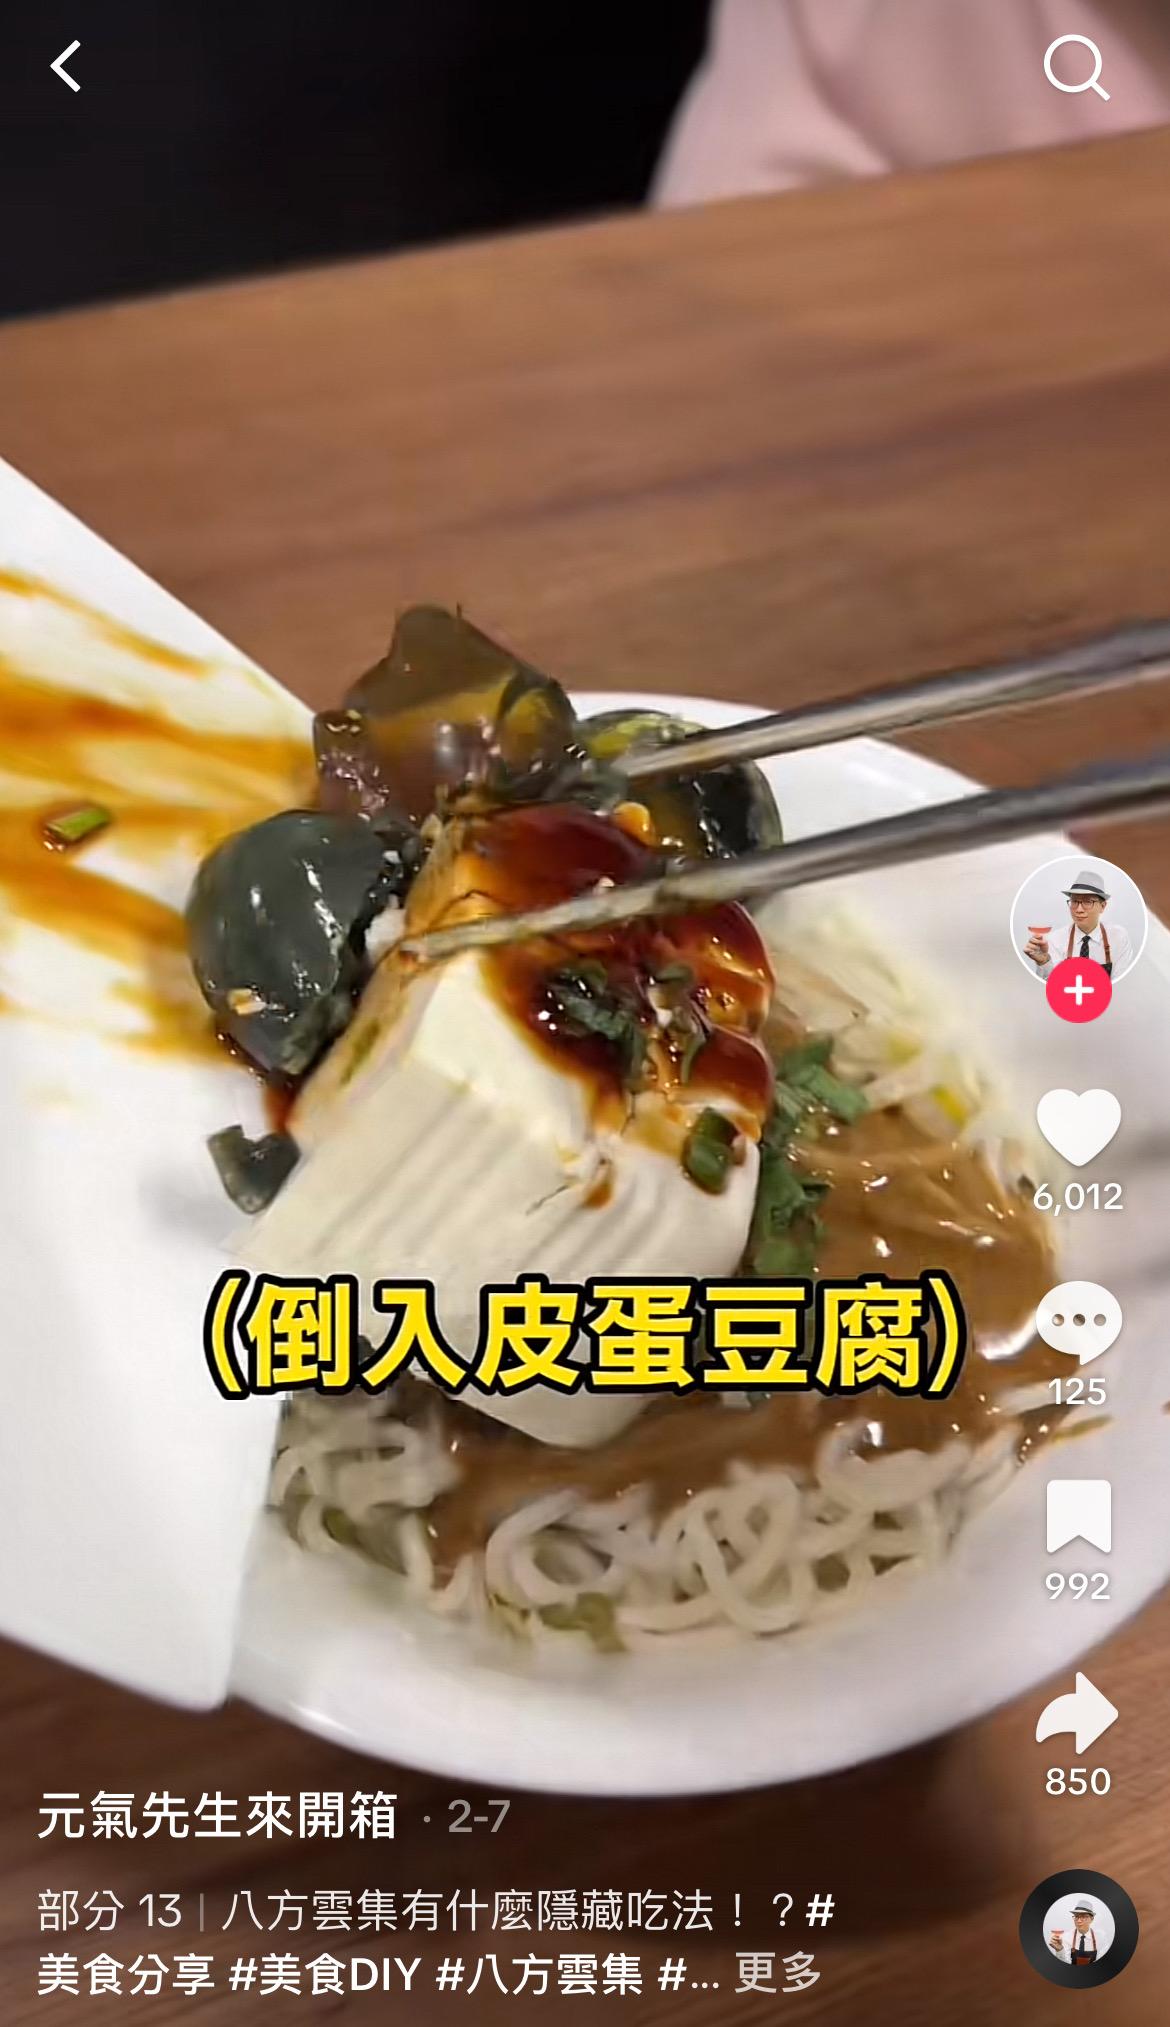 從影片中可以看到，該博主將「麻醬麵」和「皮蛋豆腐」混在一起吃。（圖／翻攝自TikTok）